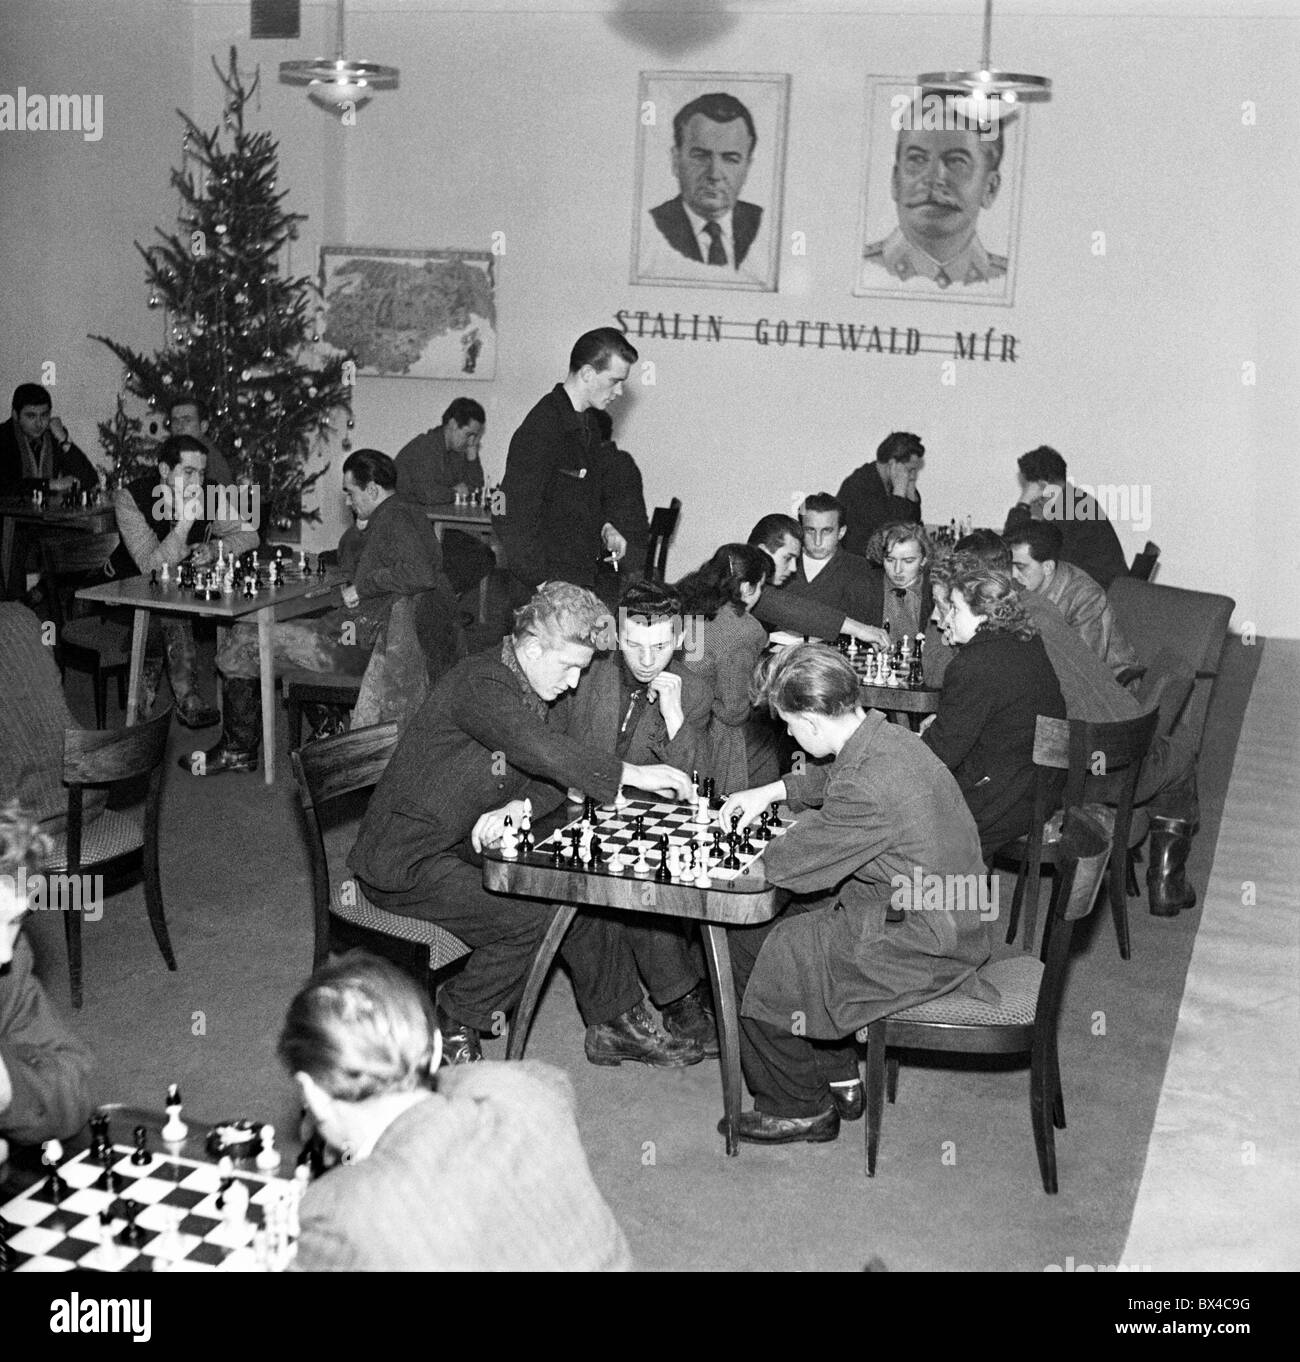 Kuncice, Ostrava, en Tchécoslovaquie, les travailleurs de la fonderie d'acier, avec des affiches de Staline et Gottwald, jouer aux échecs pendant le temps libre. Banque D'Images